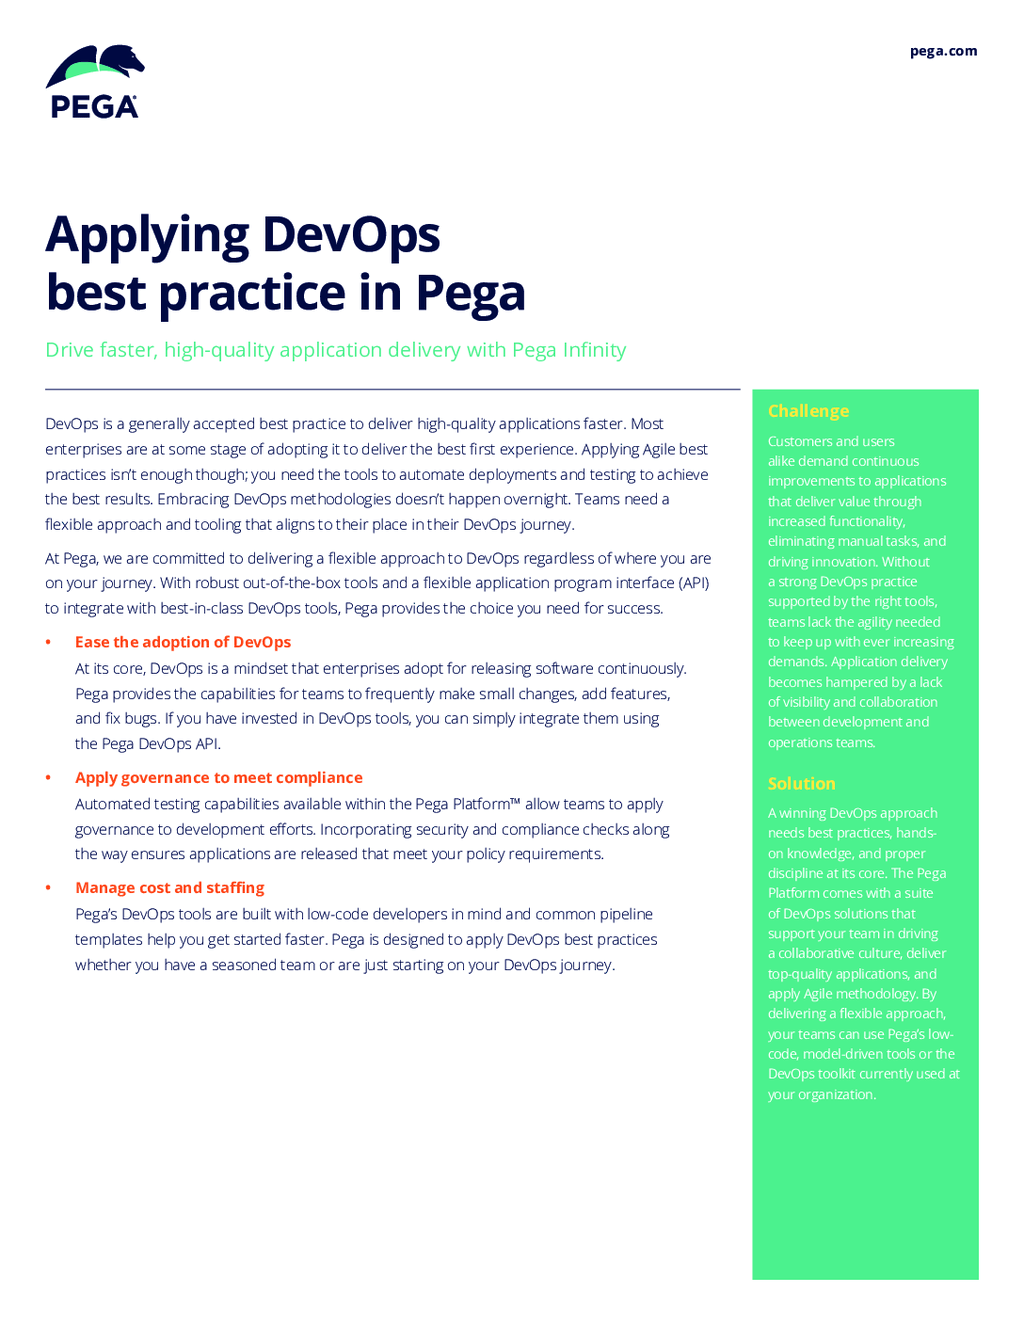 Applying DevOps best practice in Pega